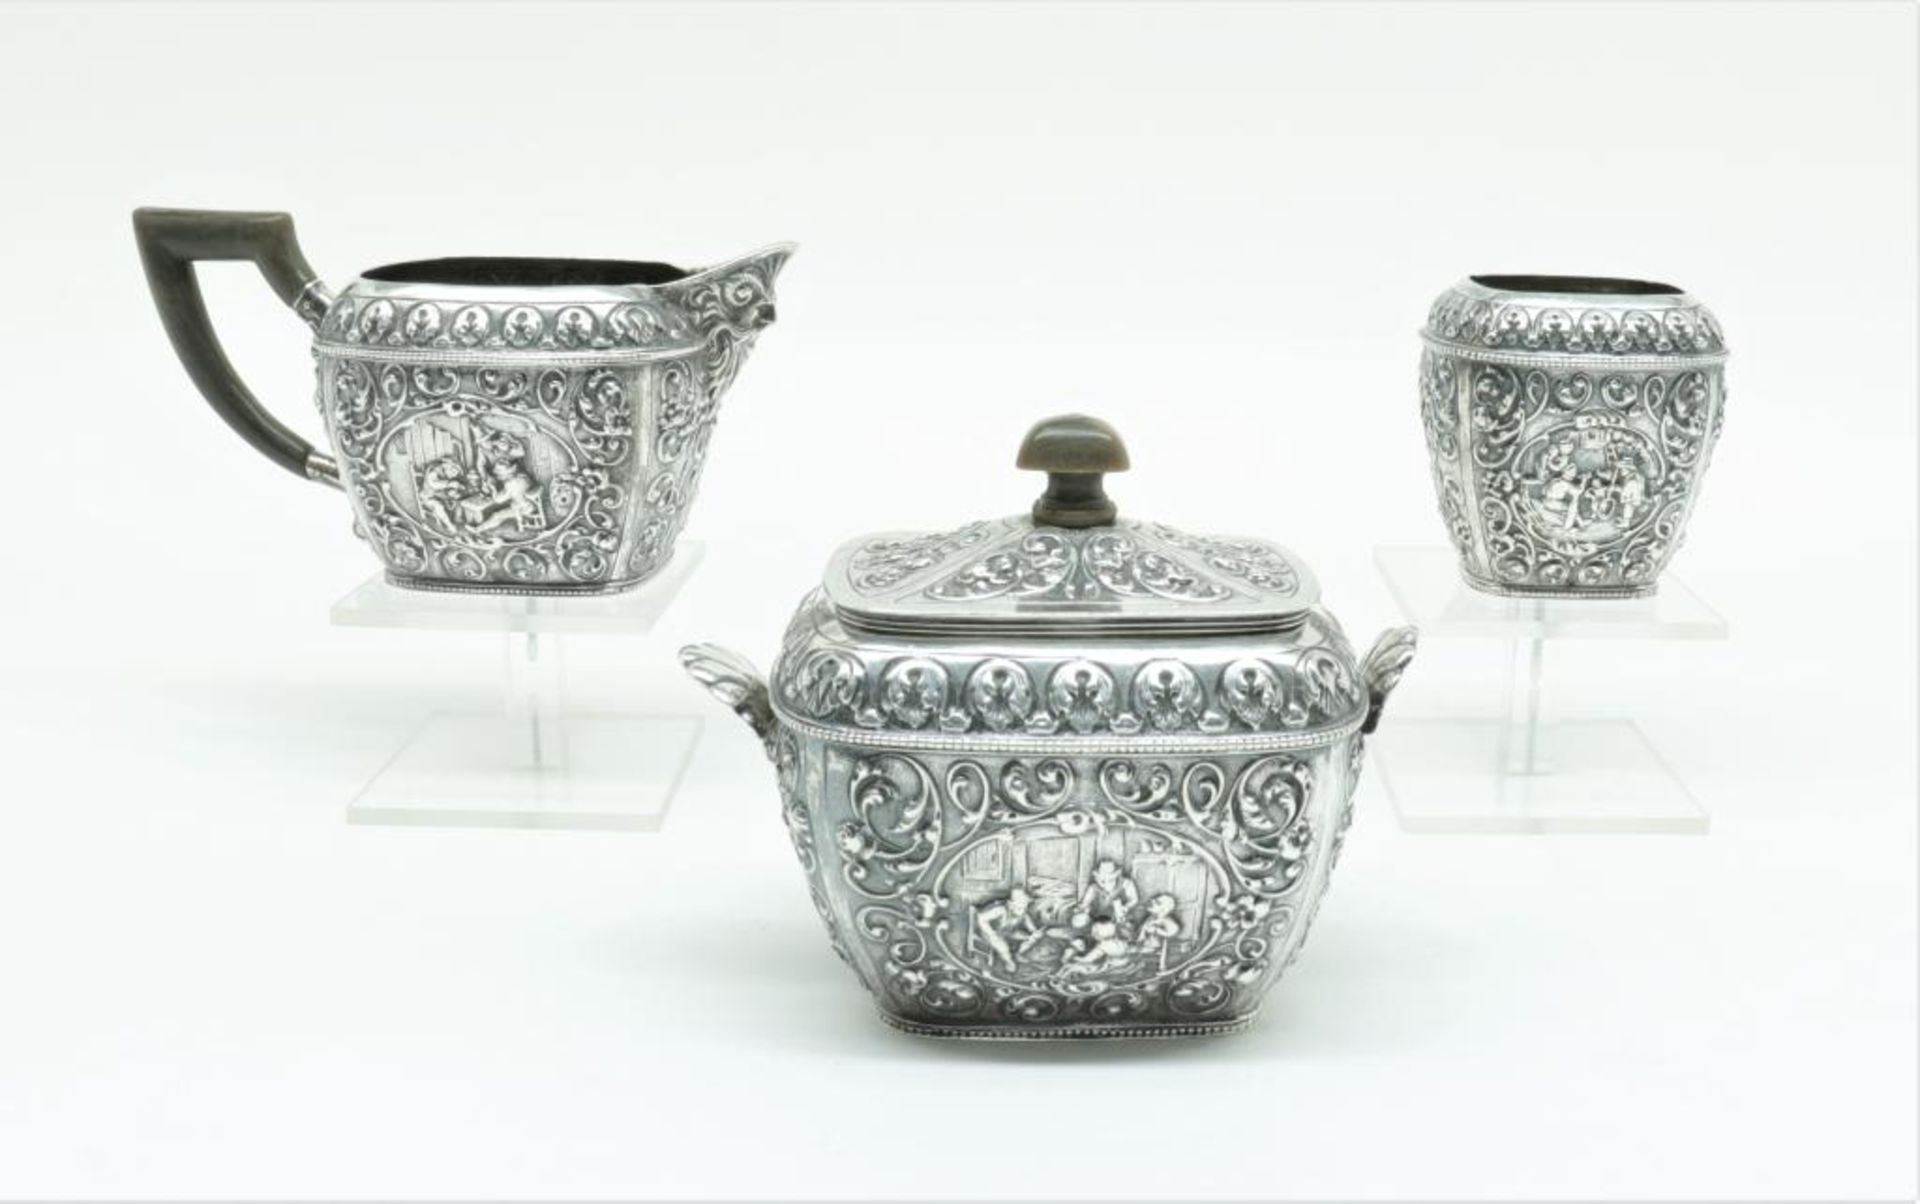 Een driedelige zilveren roomset met Oud-Hollands taferelen, mt Schoorl/firma Dahlia, Amsterdam, jl